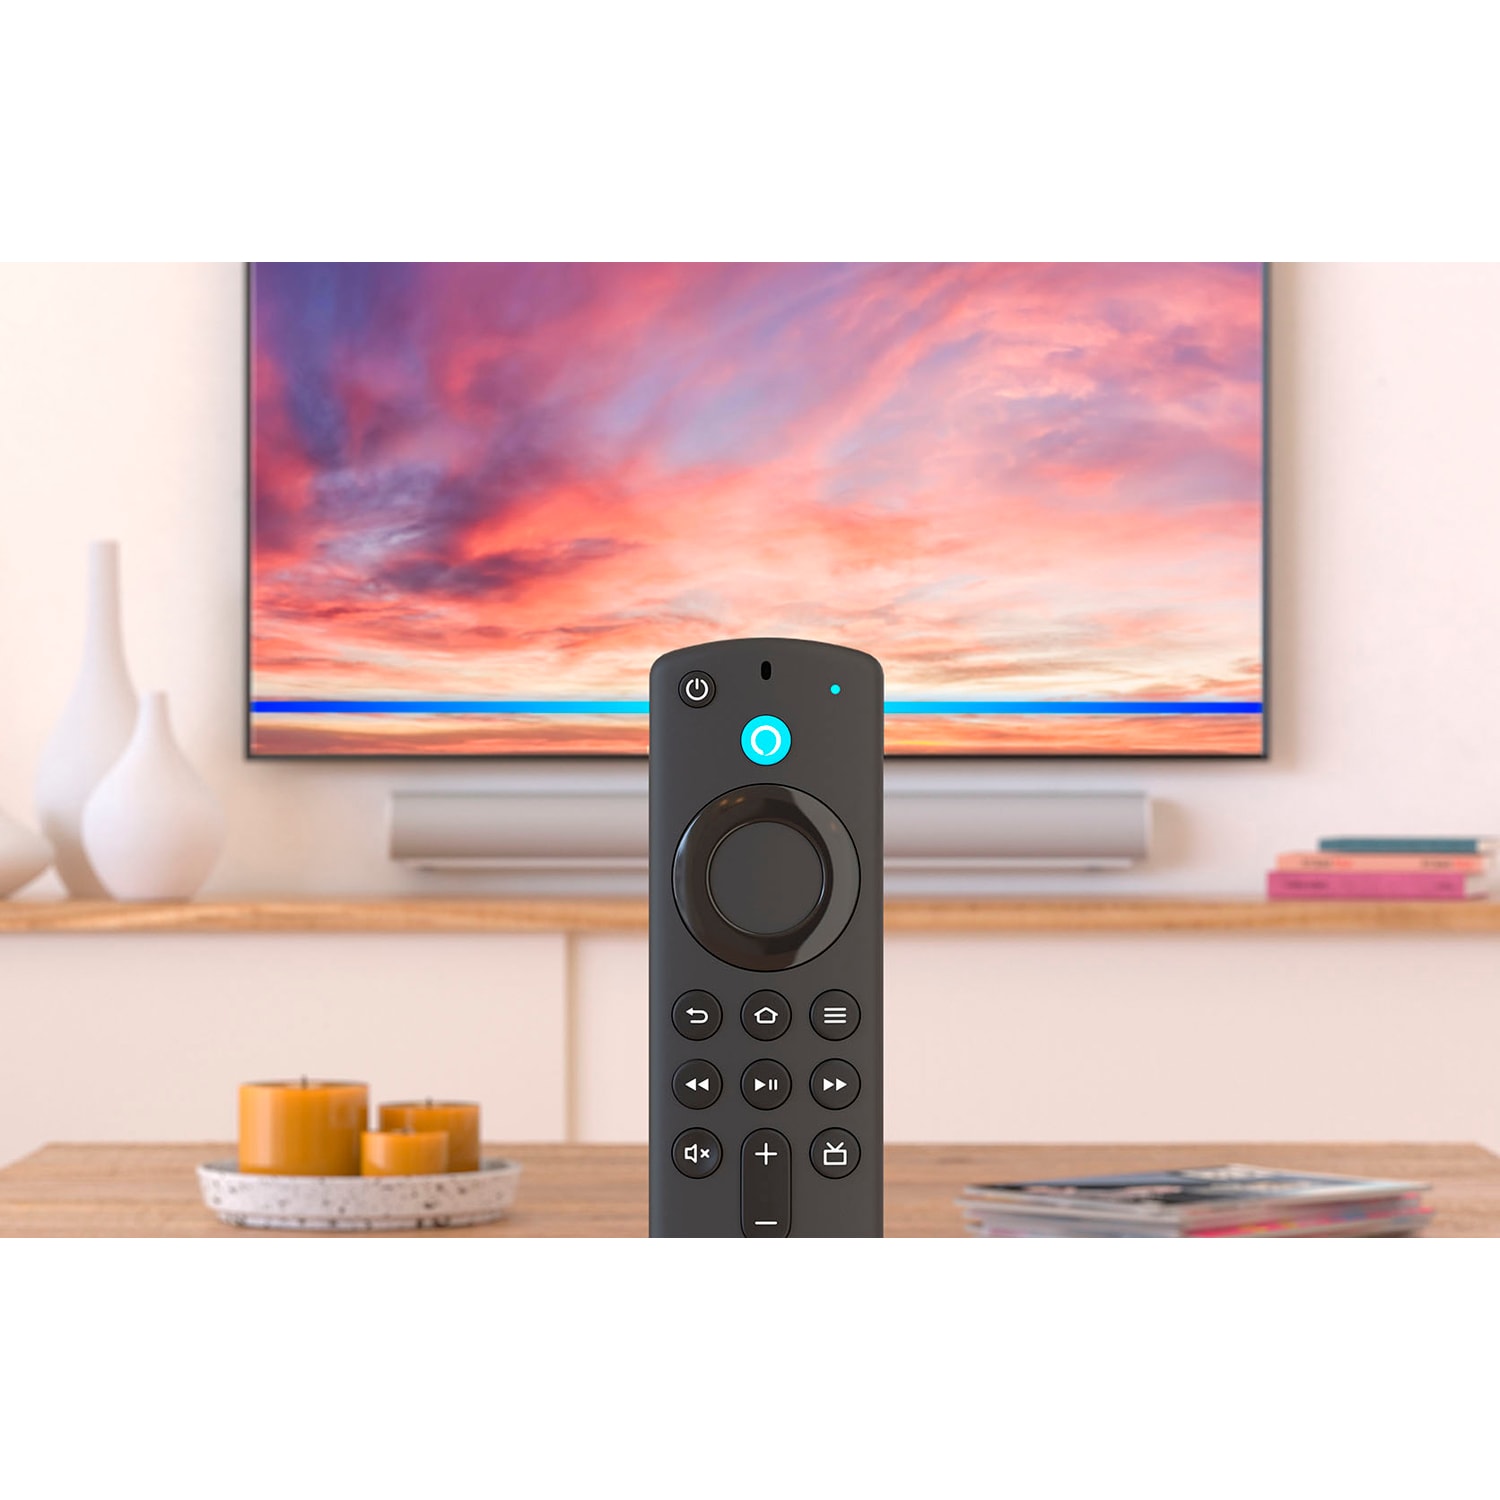 REVIEW:  Fire TV Stick 4K con mando Alexa